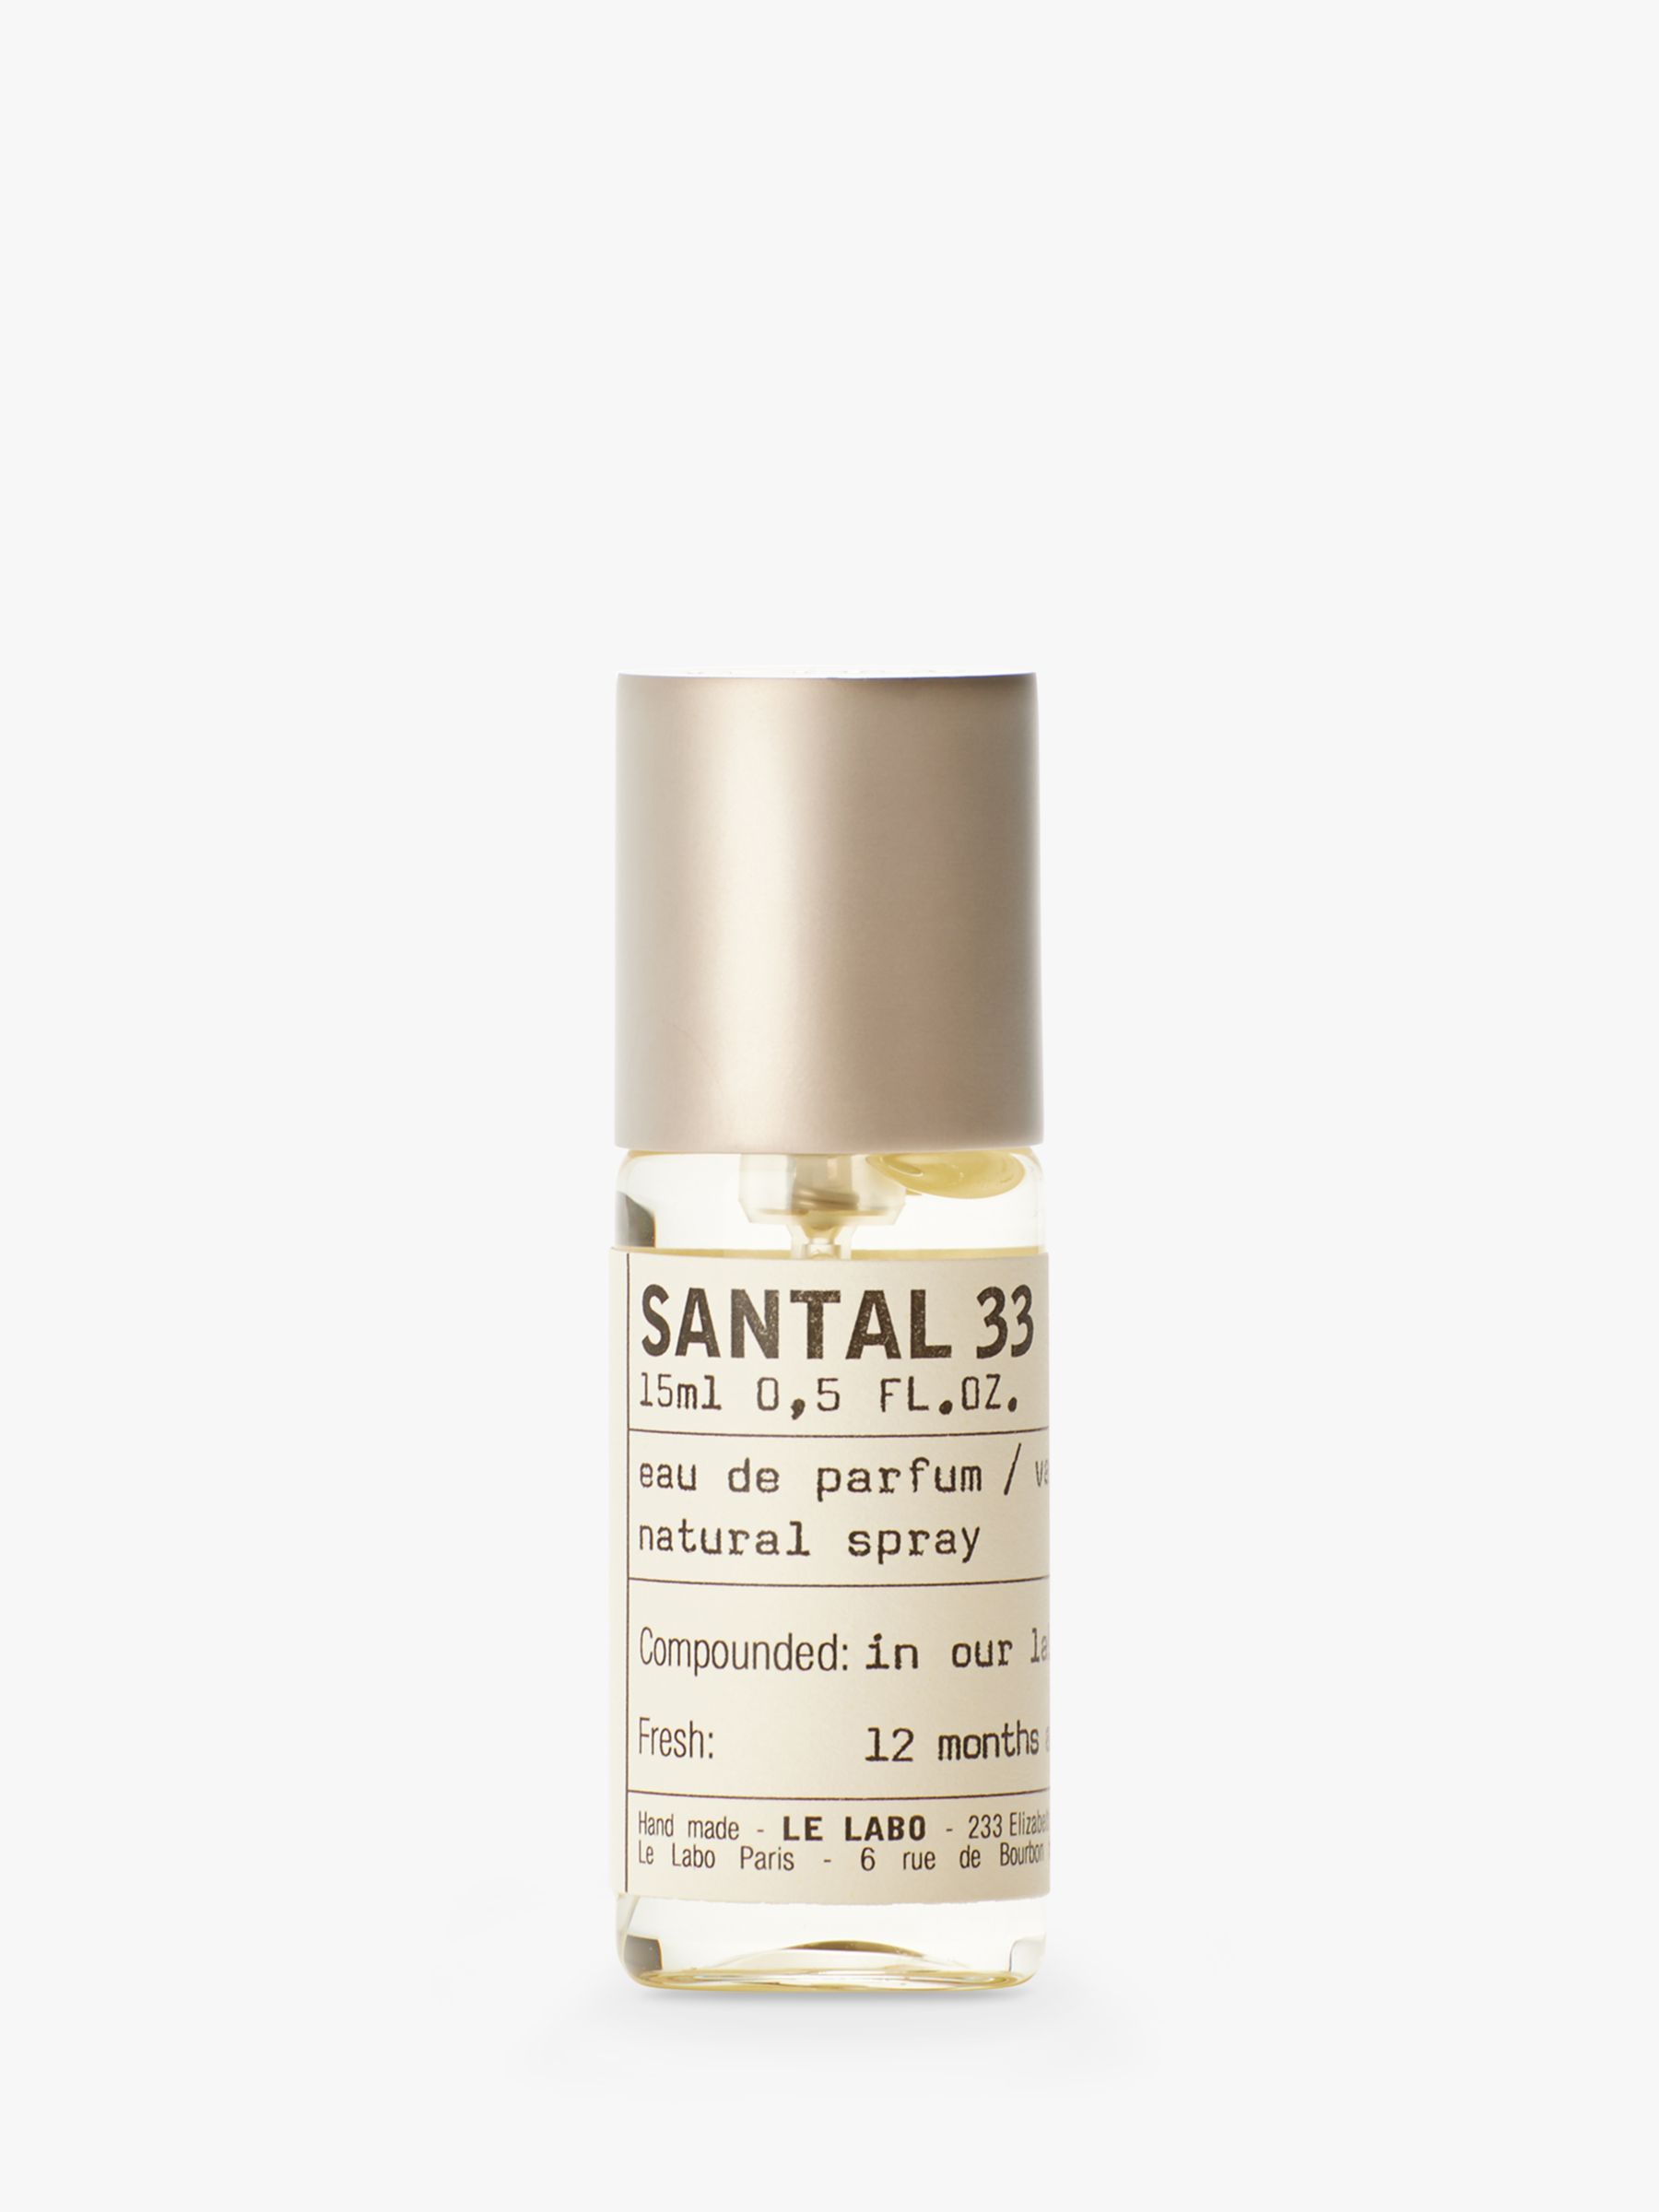 Le Labo Santal 33 Eau de Parfum, 15ml 1